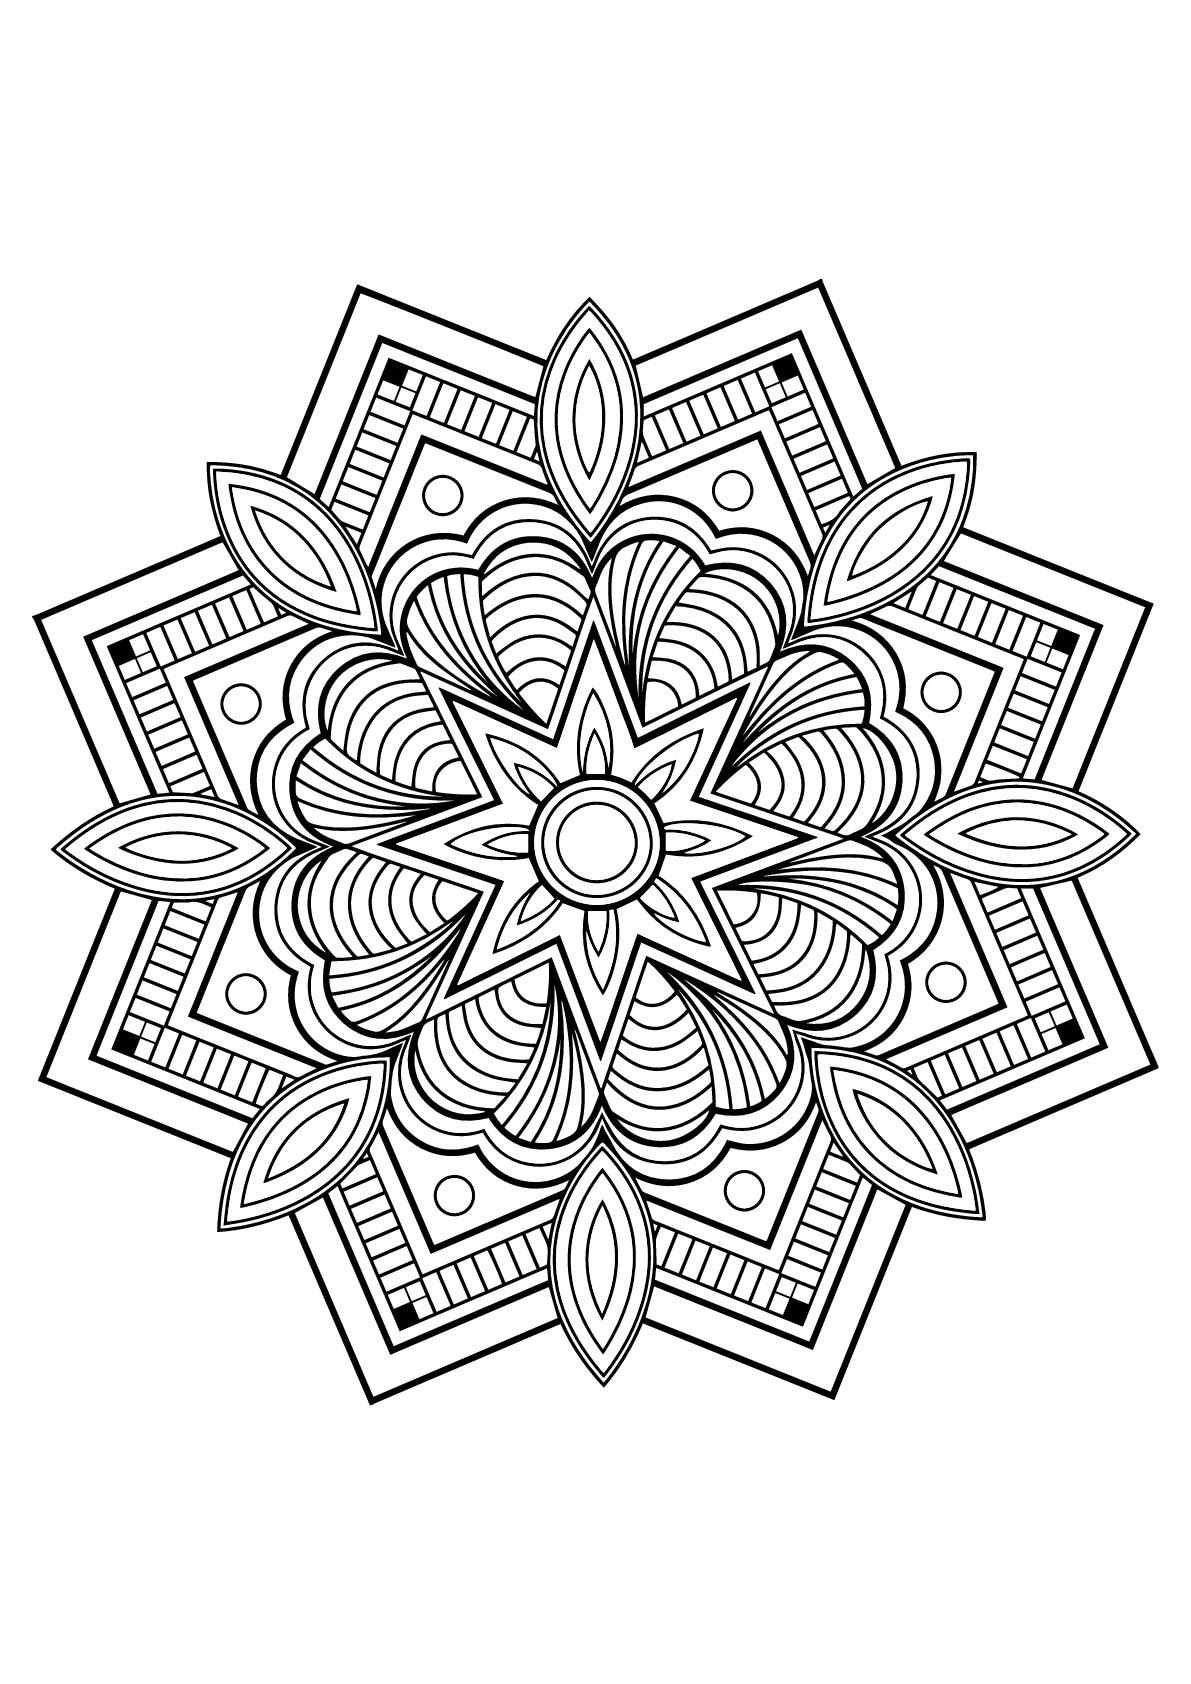 Mandala Complexe Livre Gratuit 10 - Coloriage Mandalas concernant Imprimer Dessin Mandala 